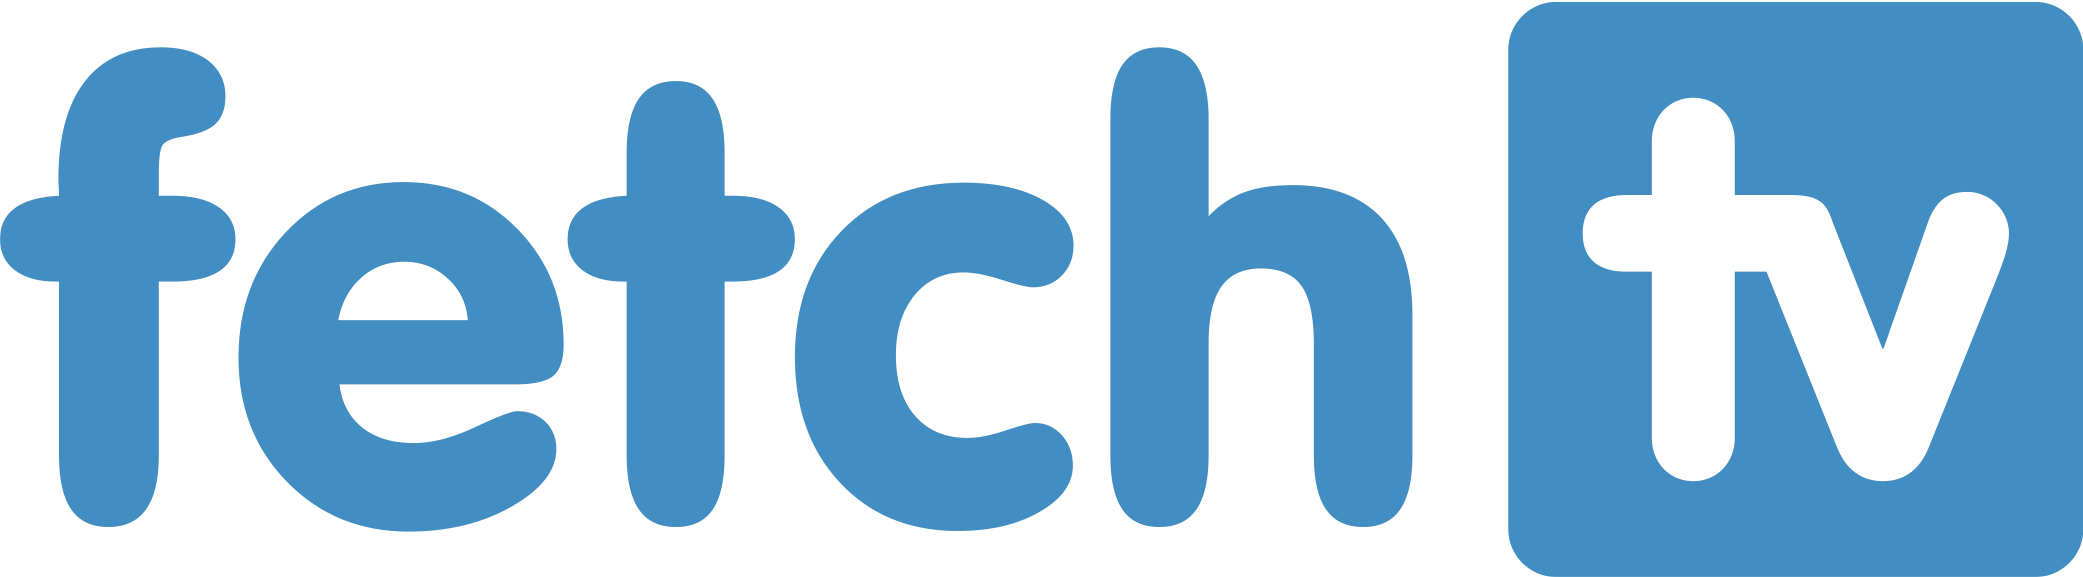 Fetch Logo - Fetch PNG Transparent Fetch.PNG Images. | PlusPNG